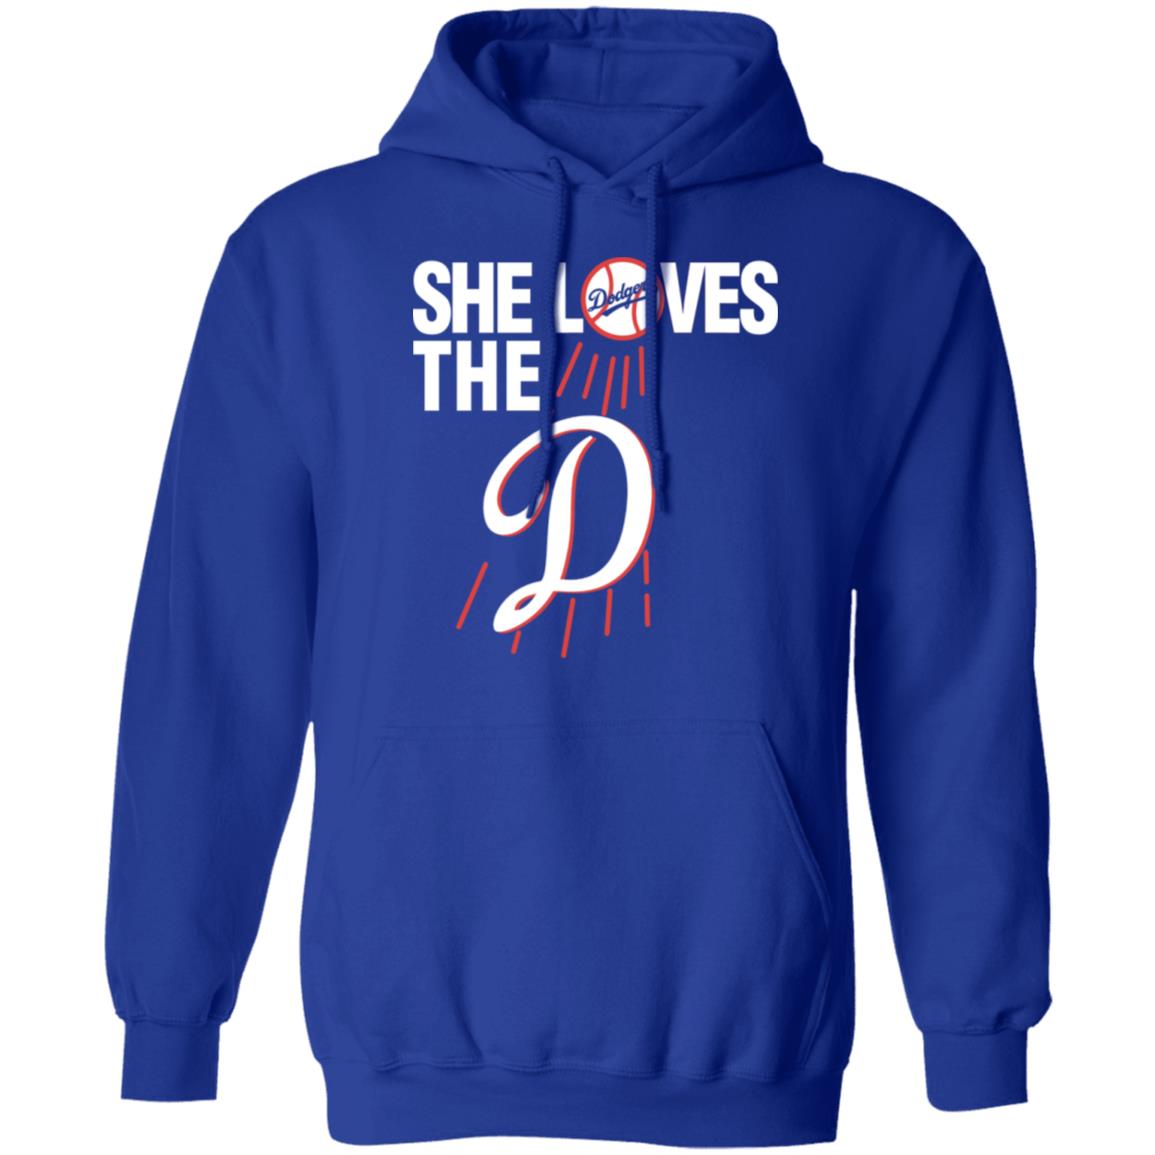 Hottertees Vintage She Loves The D Dodgers Shirt